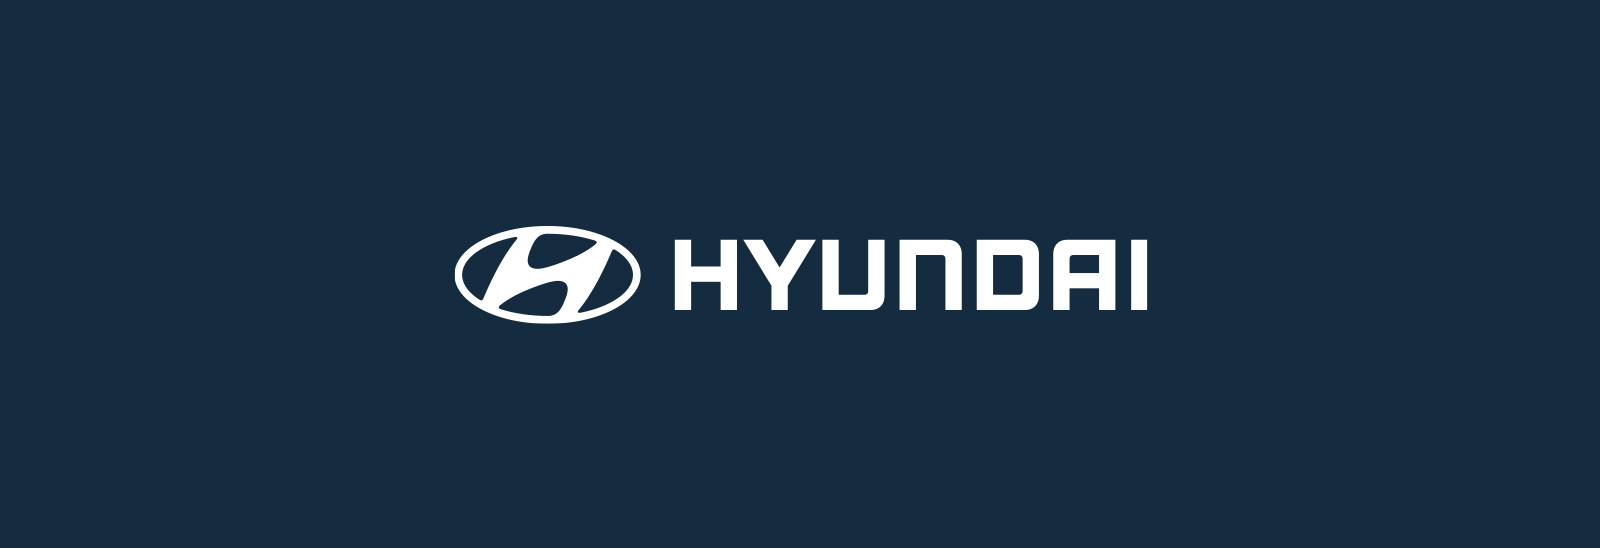 Logo Hyundai en color blanco sobre fondo azul